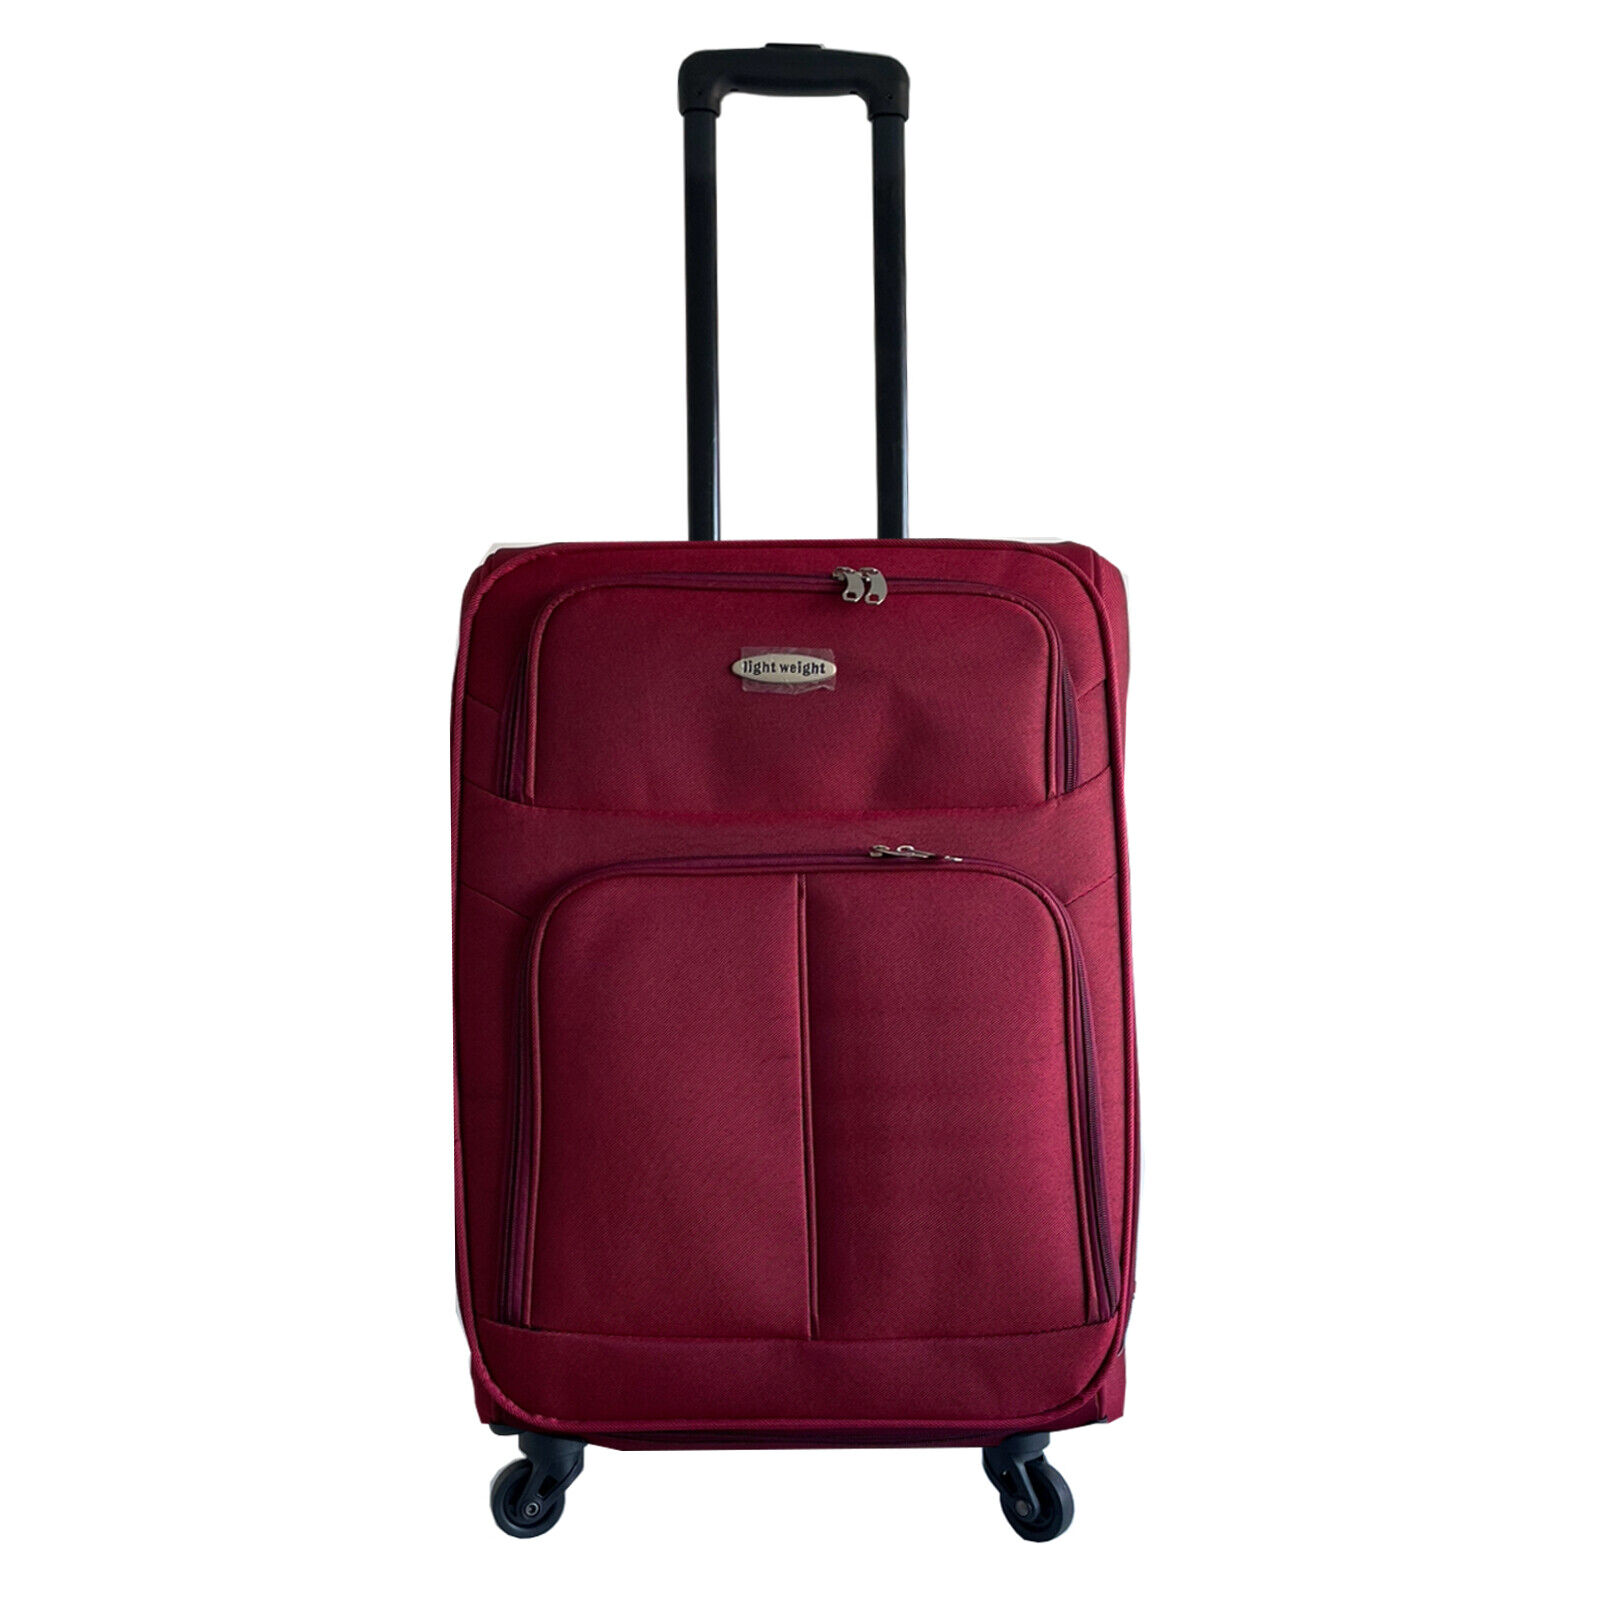 Stoff Koffer Kofferset Trolley Reisekoffer Taschen Urlaub Gepäck Groß Größe XL